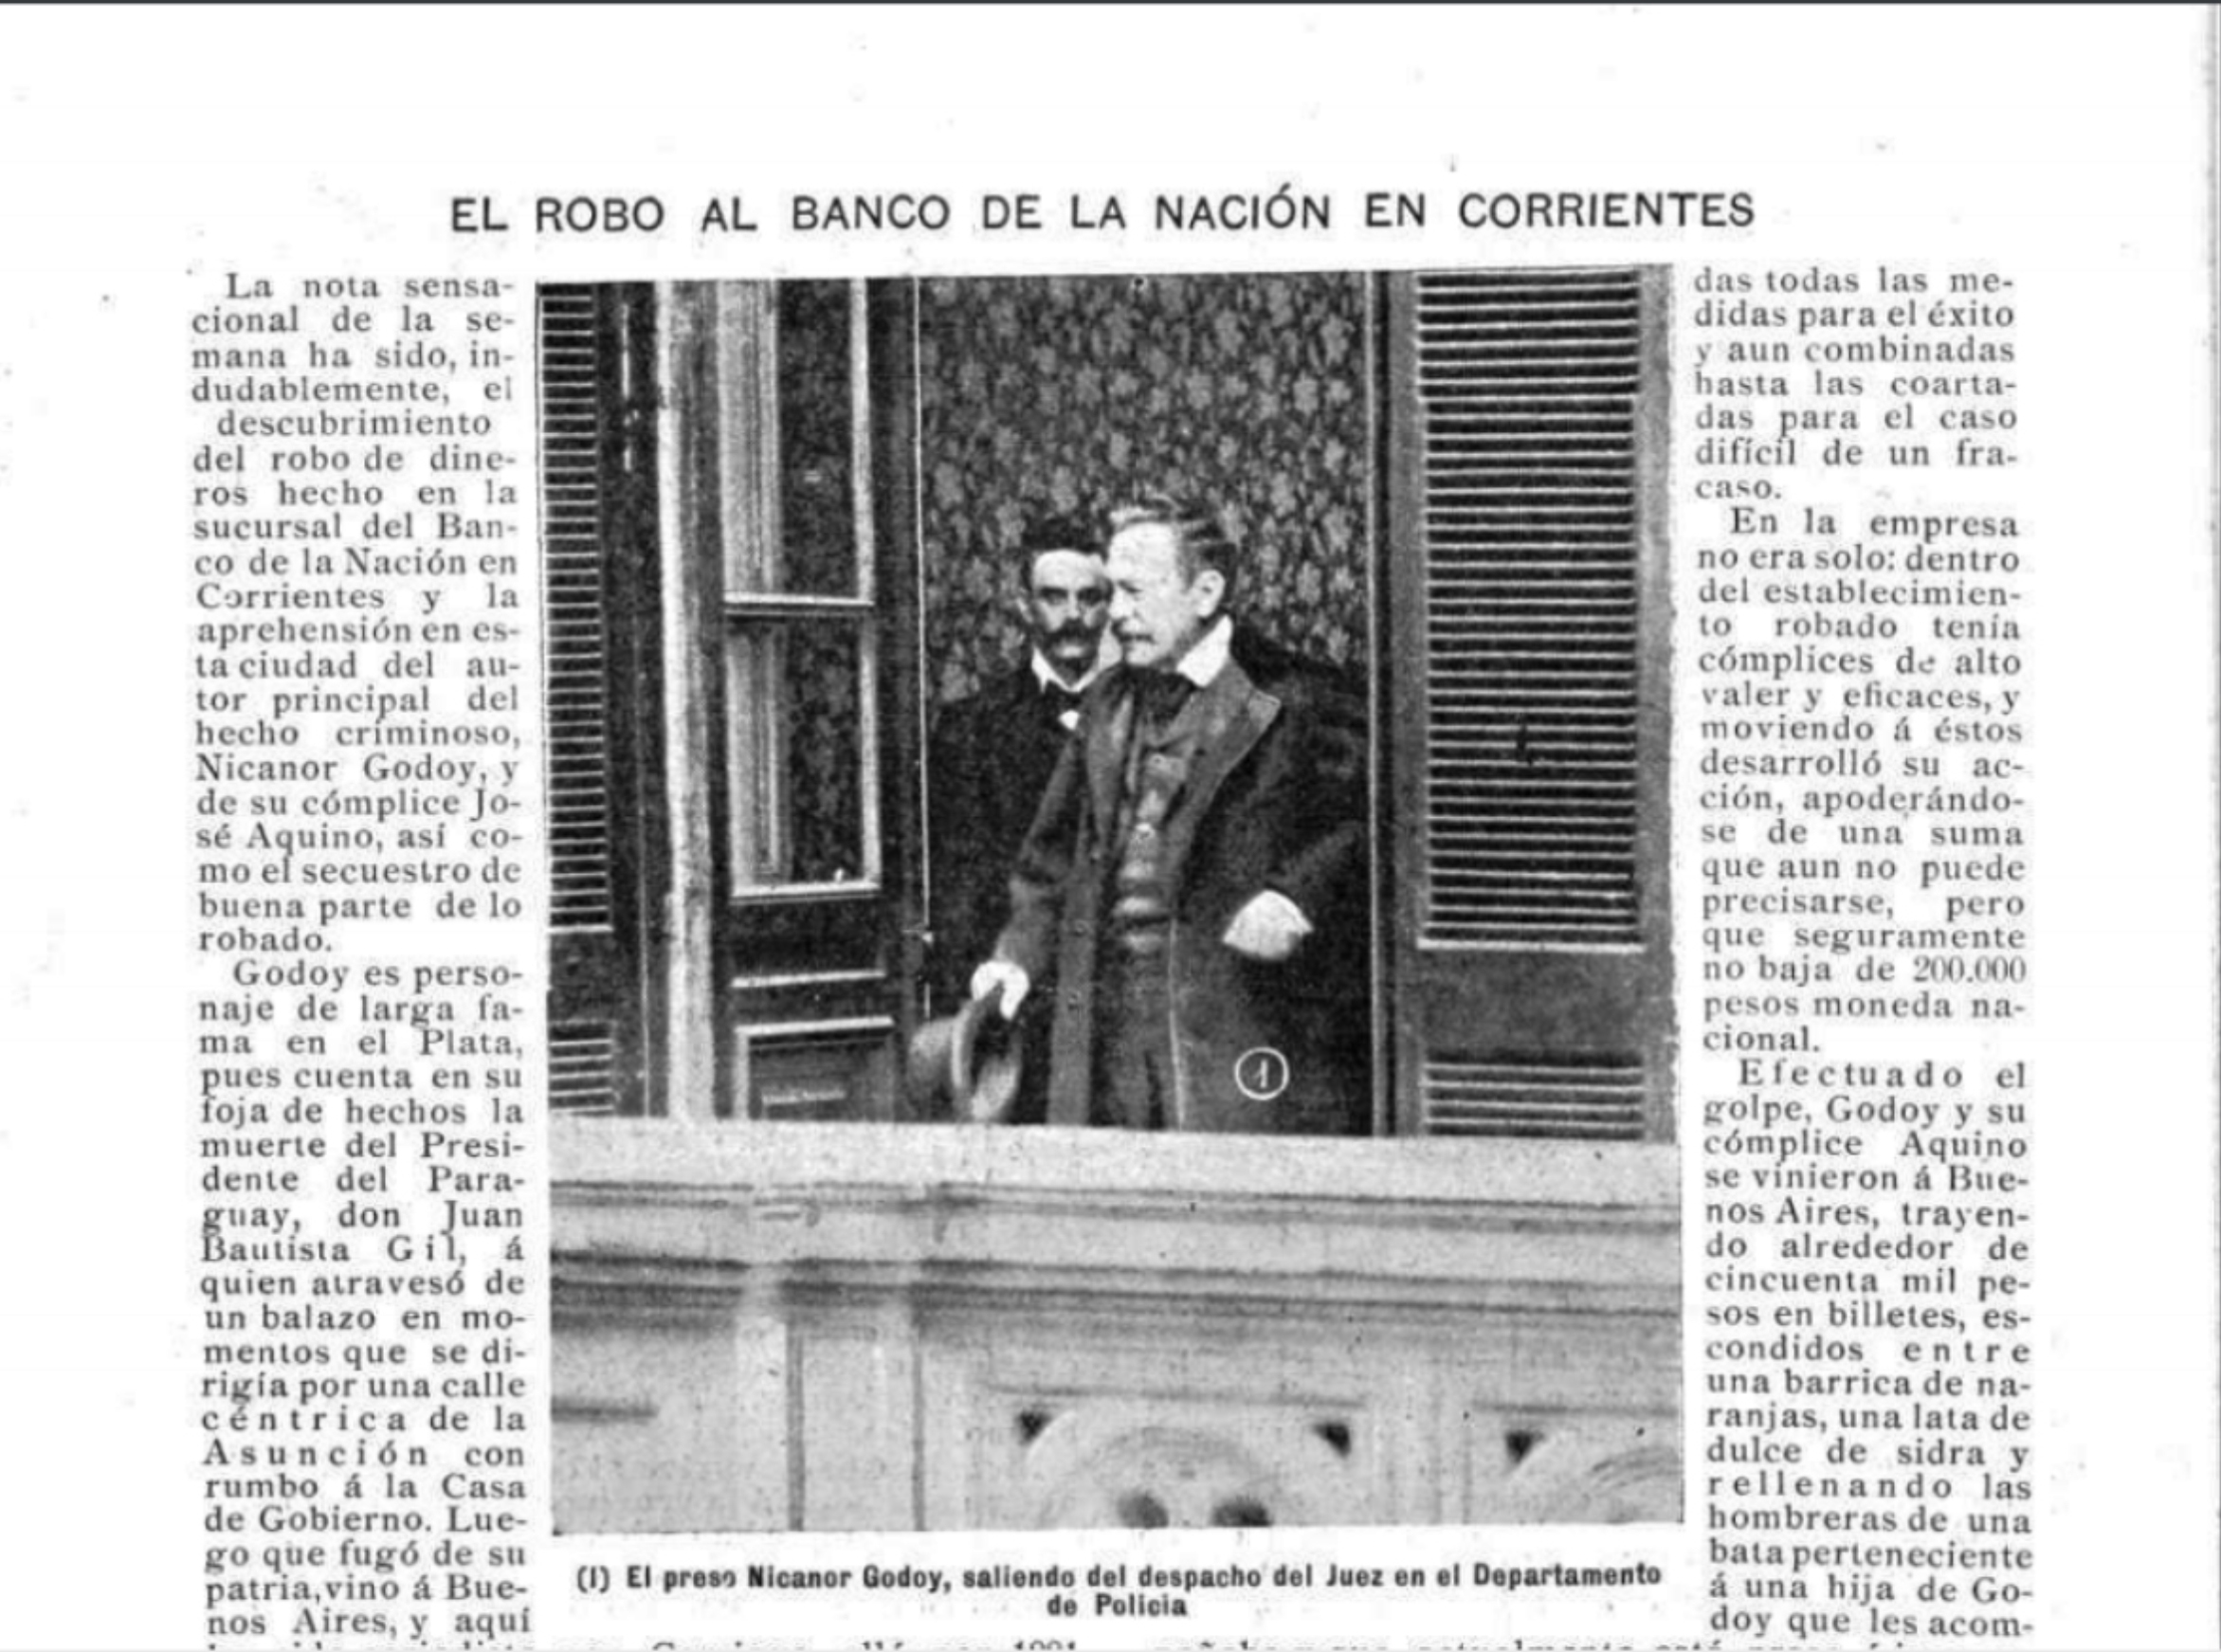 “El robo al Banco de la Nación en Corrientes”, revista Caras y Caretas, 7 de octubre de 1899.